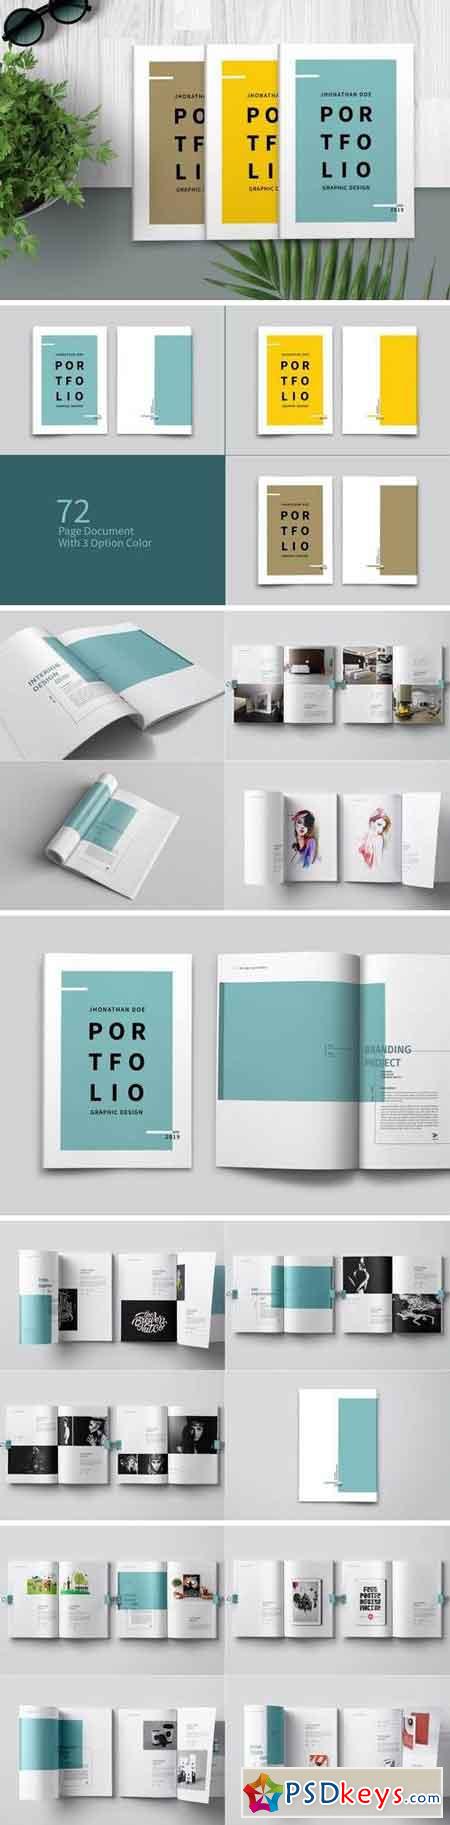 Graphic Design Portfolio Template 4